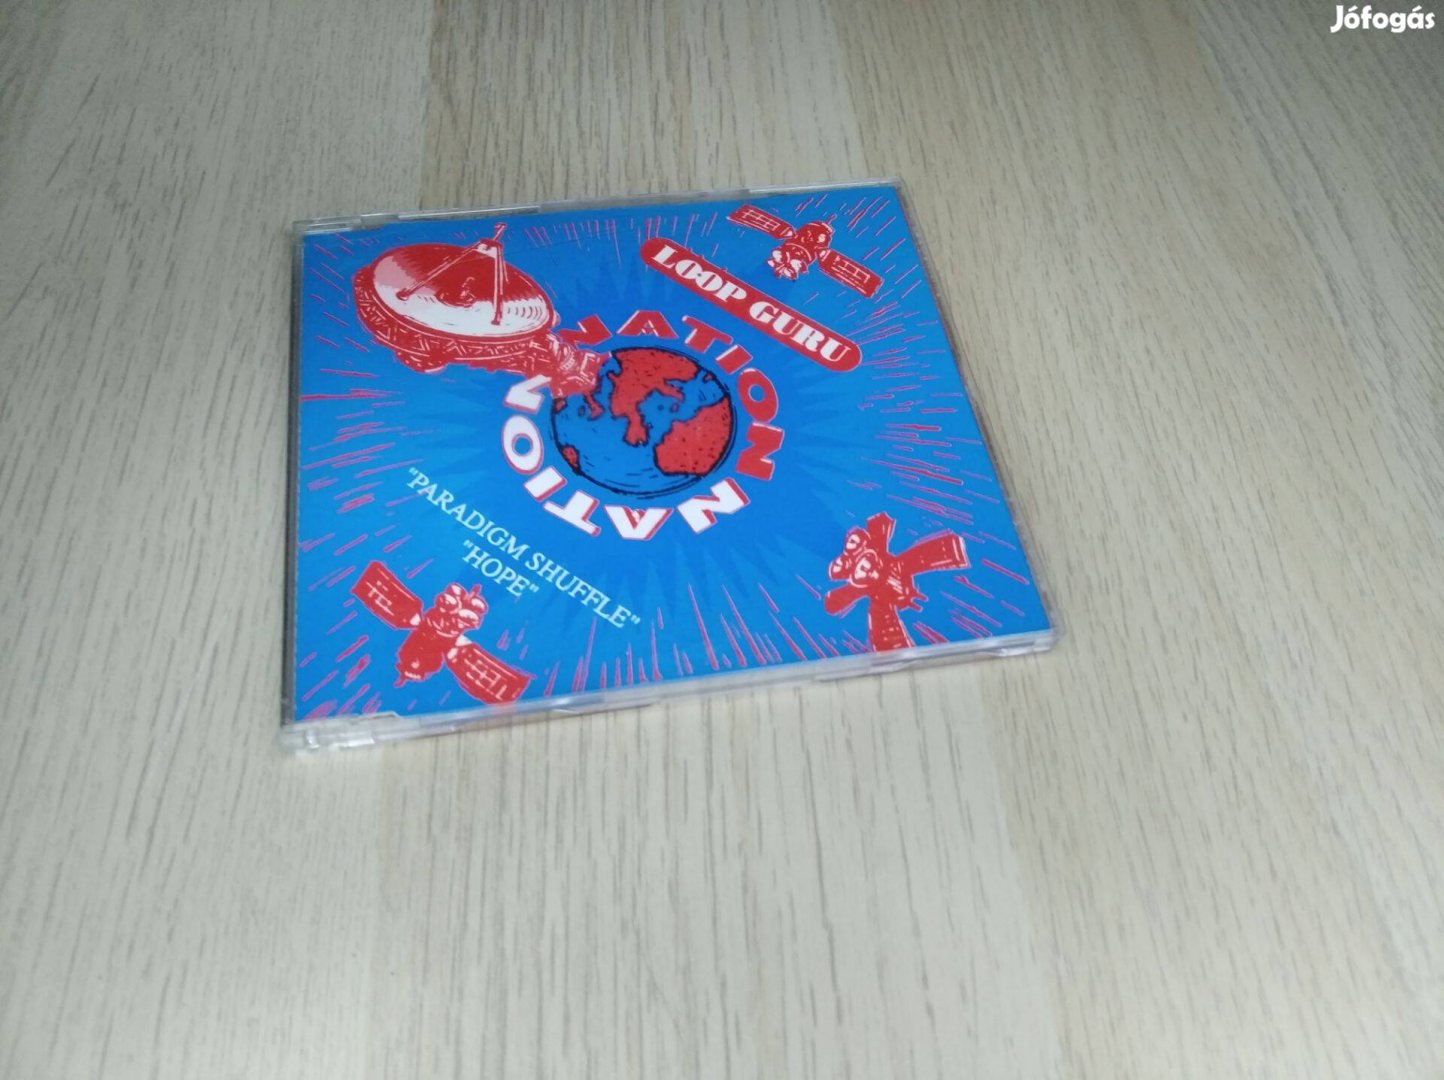 Loop Guru - Paradigm Shuffle / Hope / Maxi CD 1993